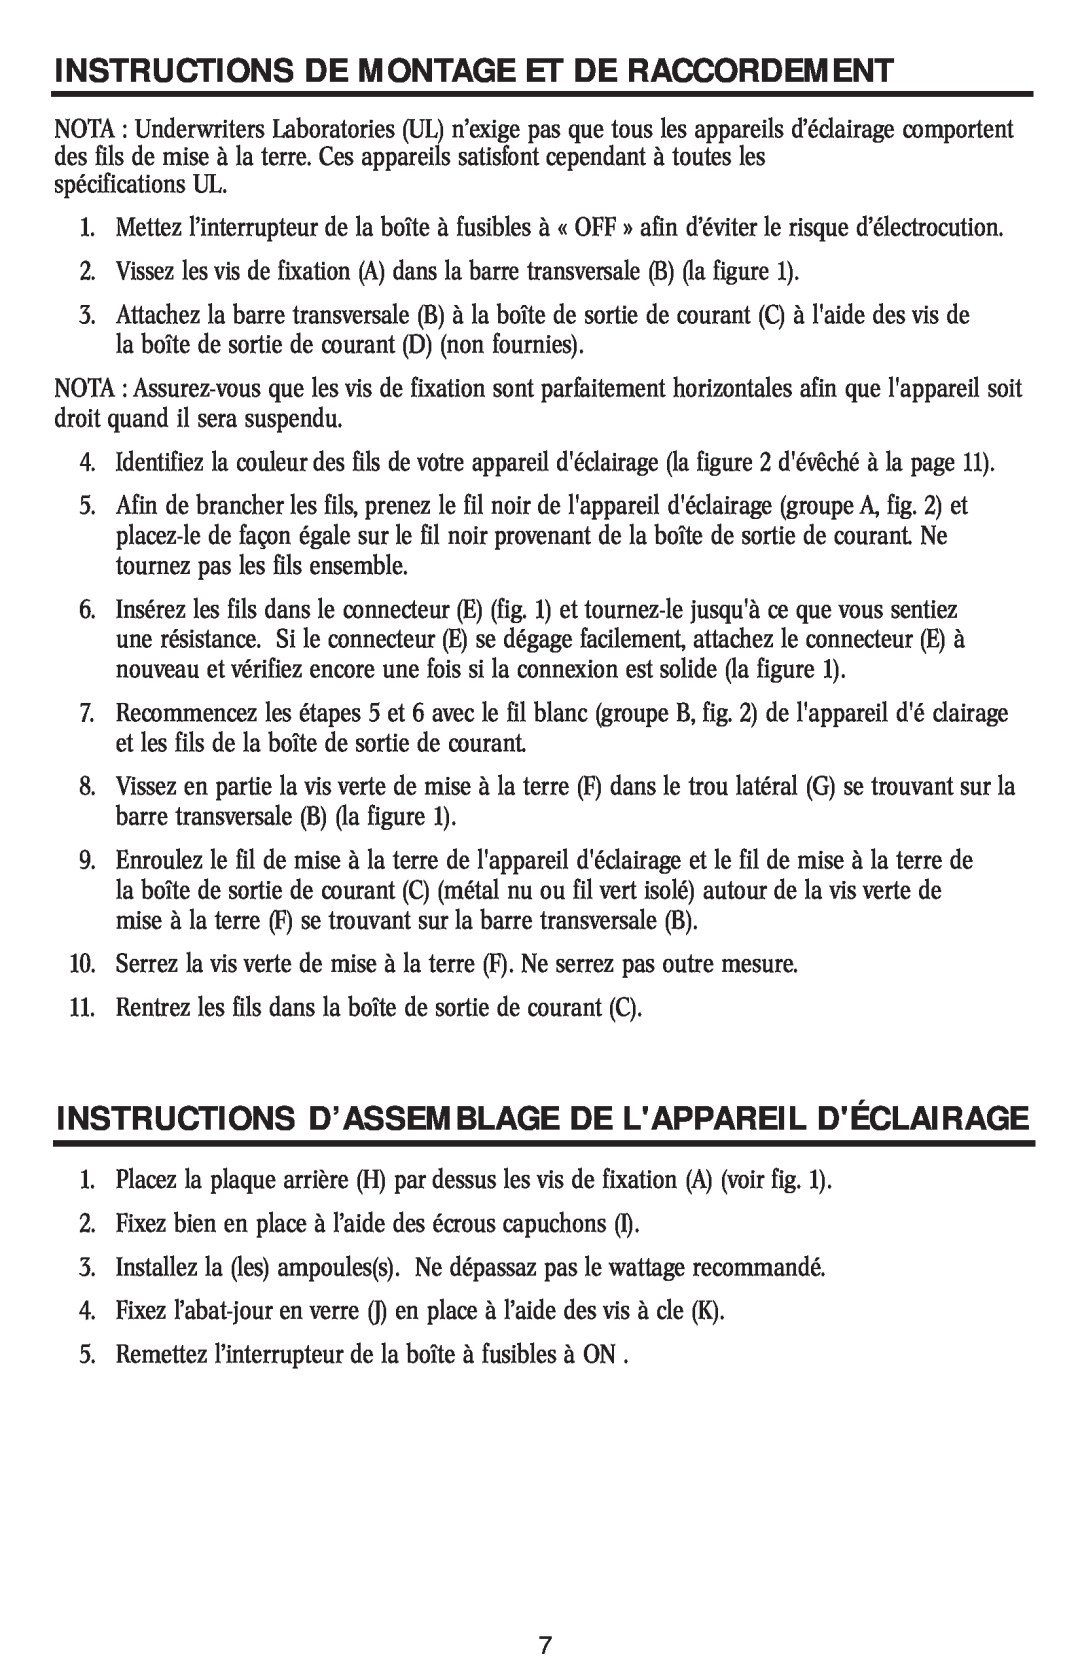 Westinghouse W-015 Instructions D’Assemblage De Lappareil Déclairage, Instructions De Montage Et De Raccordement 